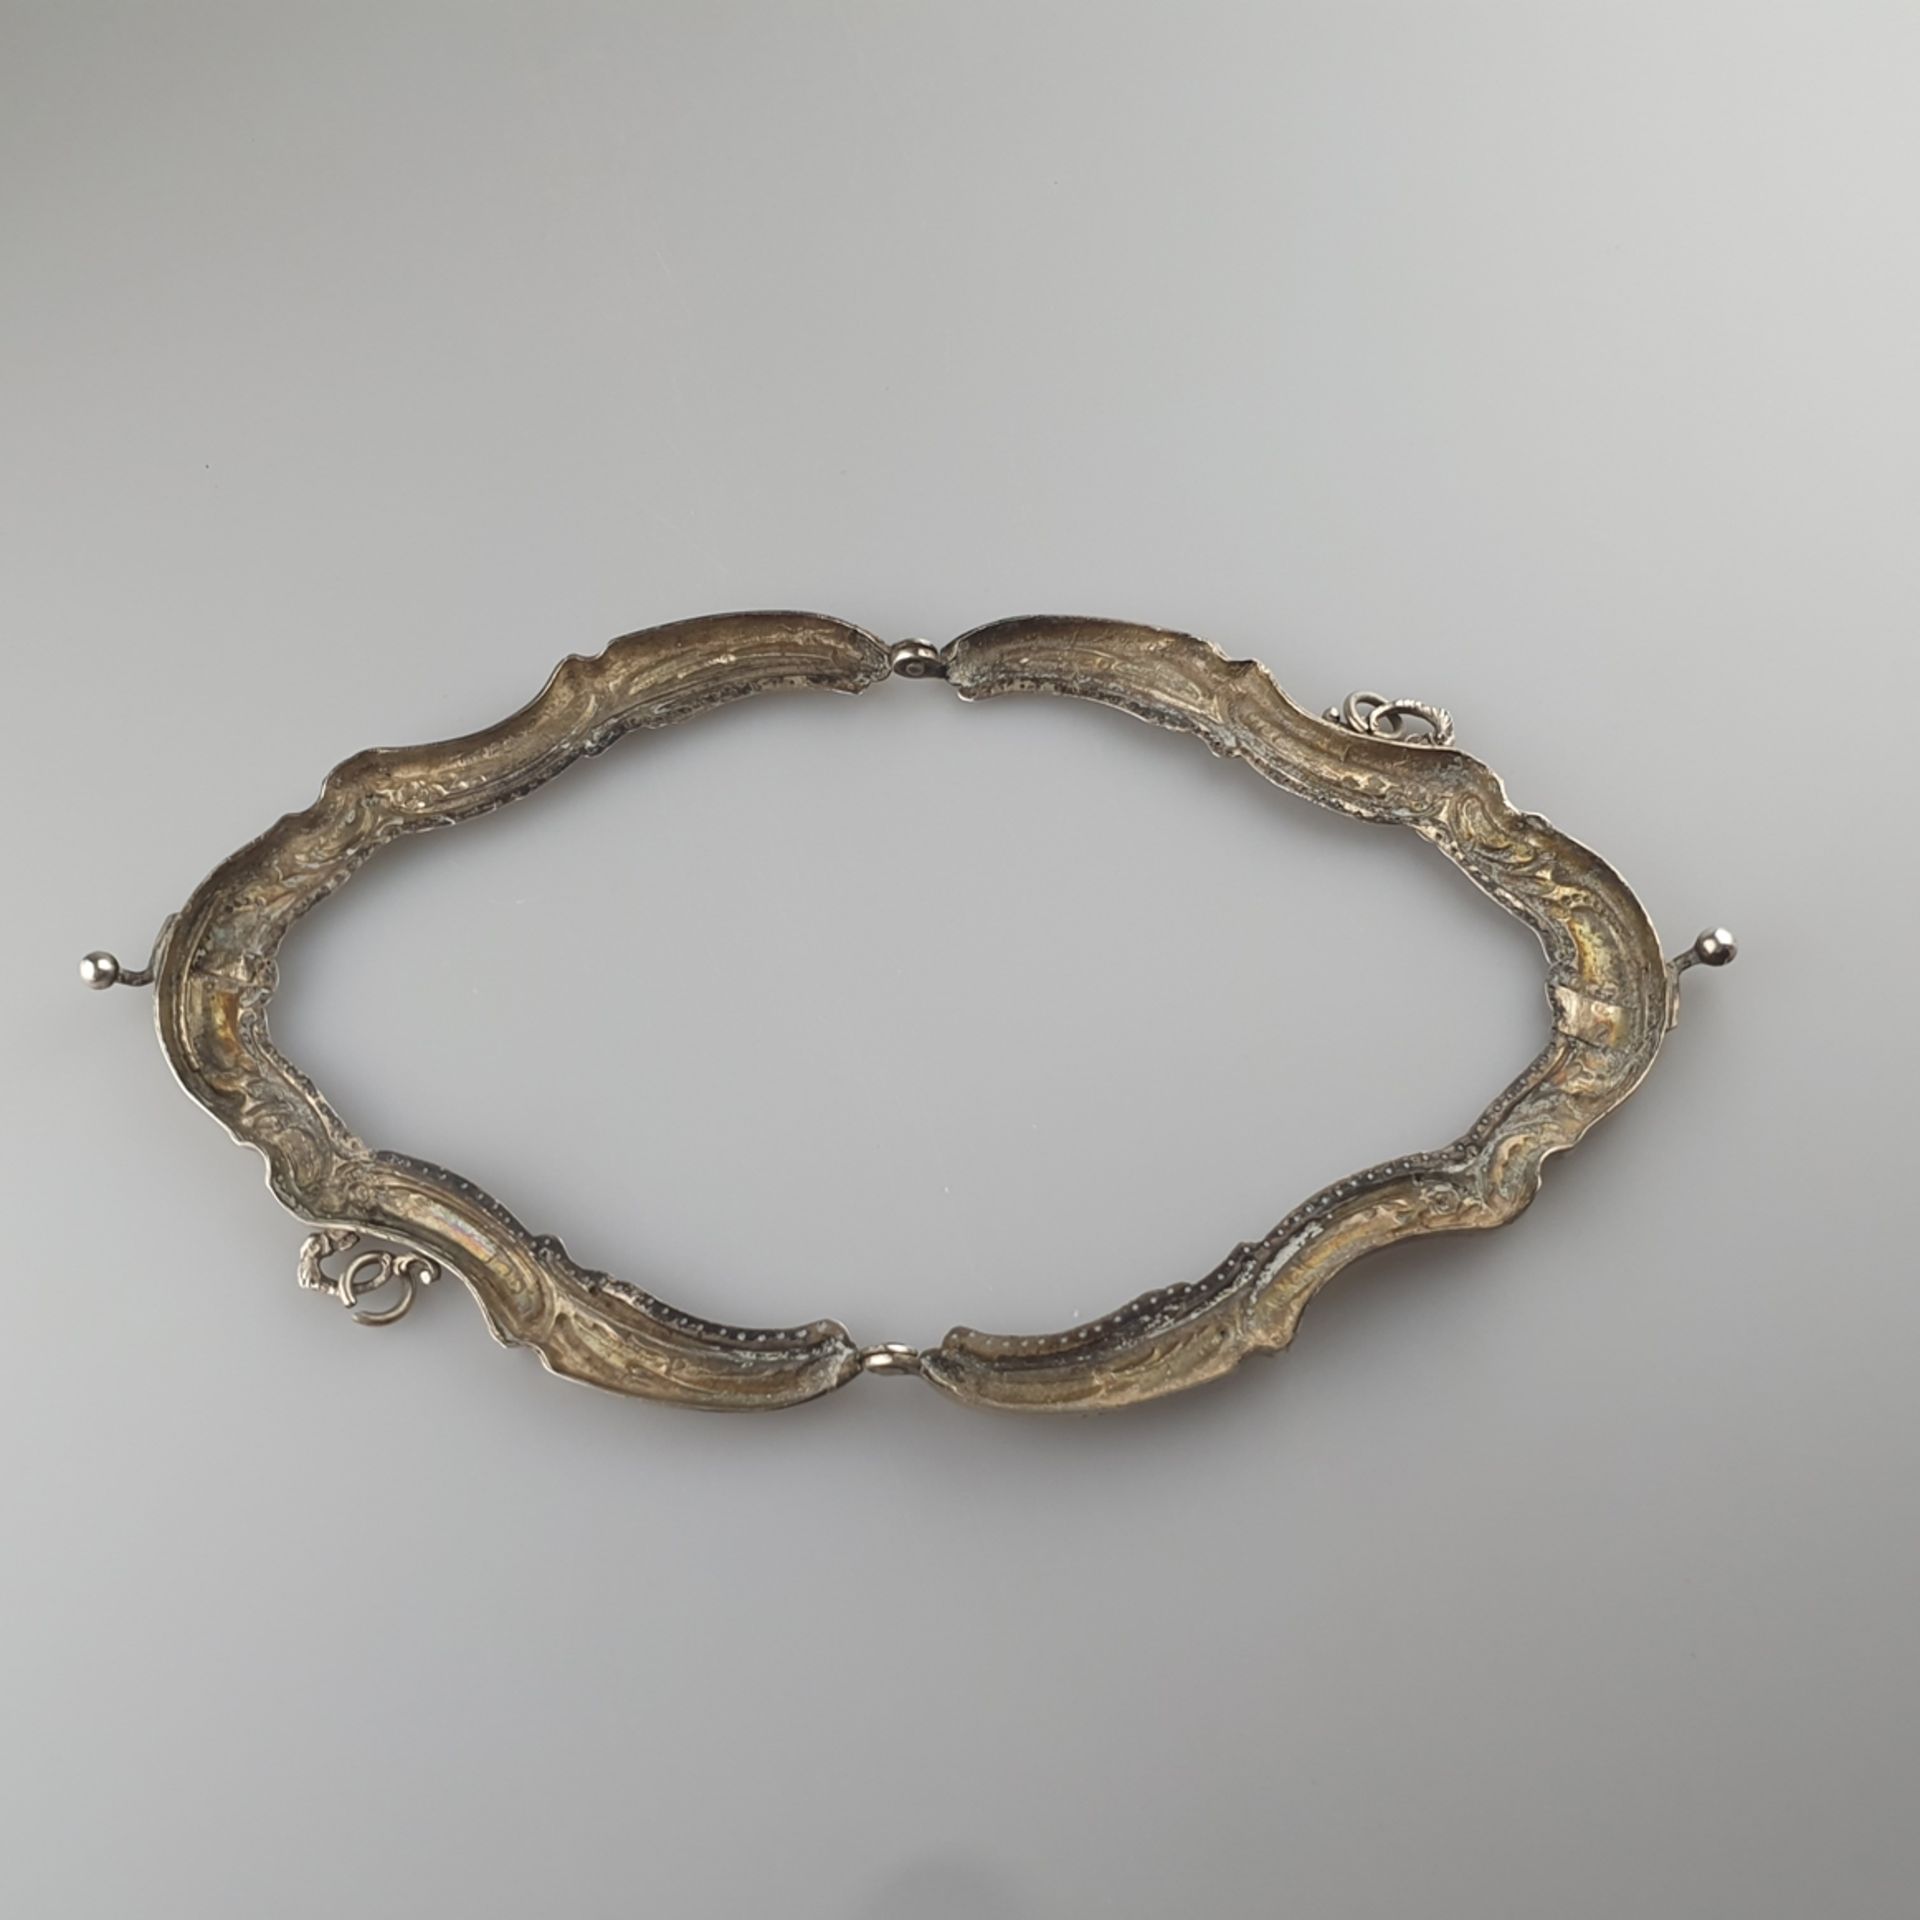 Taschenbügel für eine Abendhandtasche - Silber 800/000, gestempelt „Halbmond Krone 800 S“, geschwei - Bild 5 aus 8